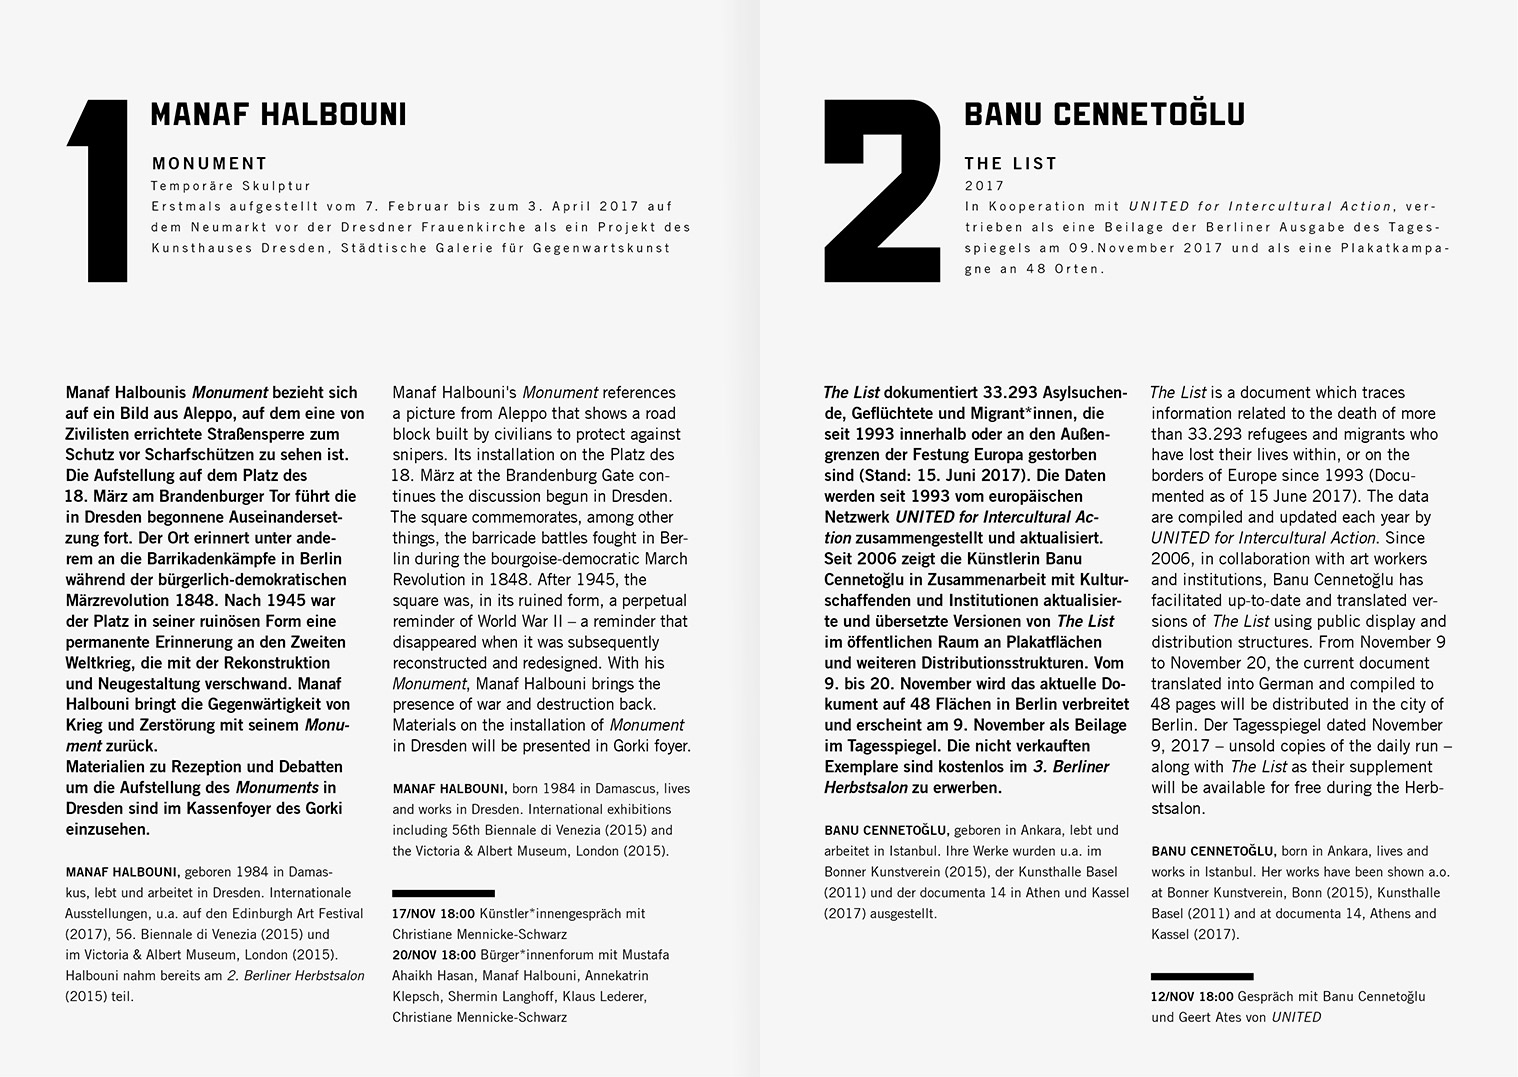 julia marquardt maxim gorki theater 3. berliner herbstsalon ausstellung exhibition grafik graphic design